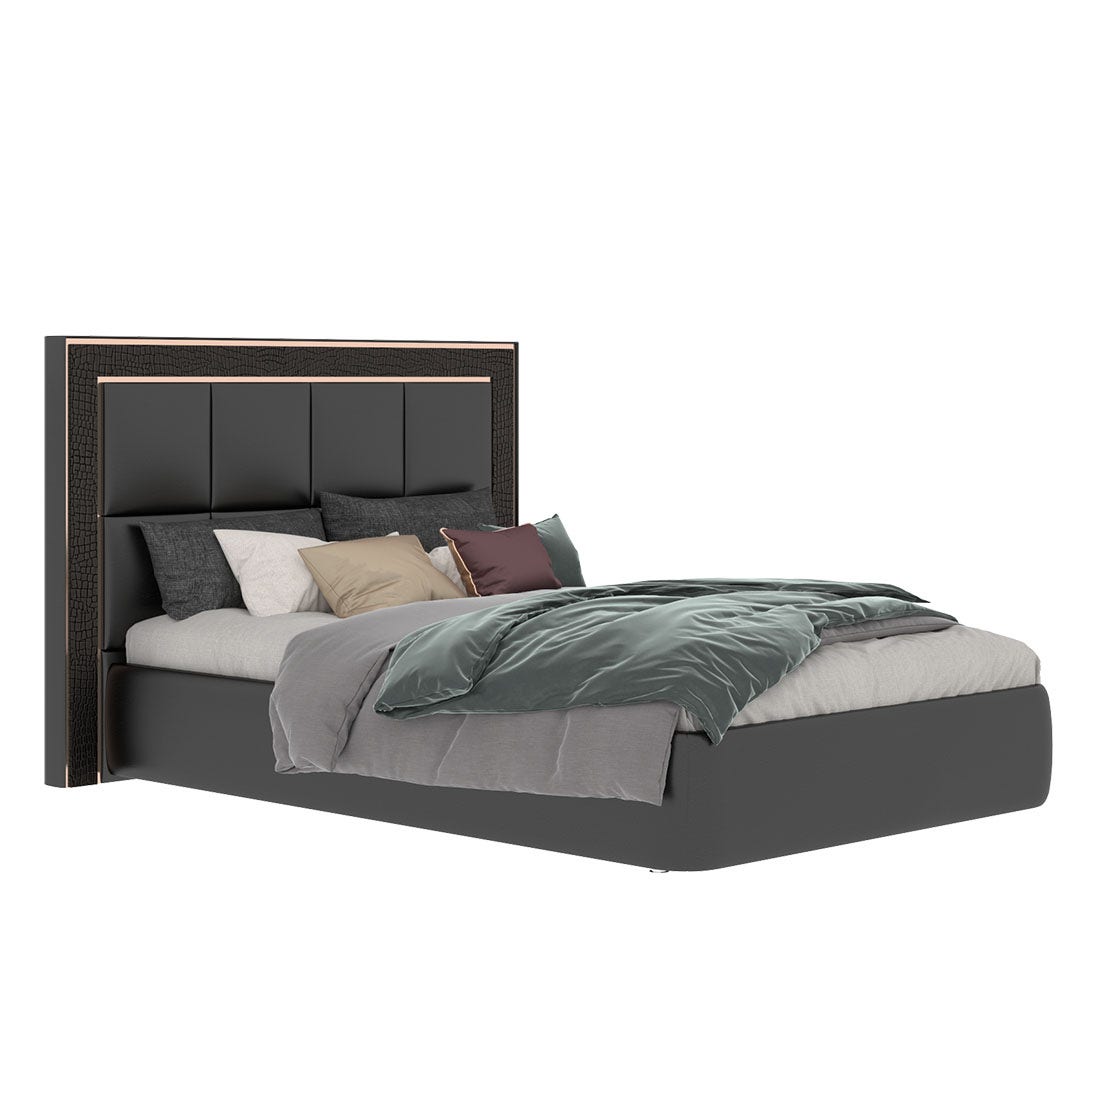 เตียงนอน ขนาด 5 ฟุต รุ่น Bellini หนังจระเข้สีดำ-01